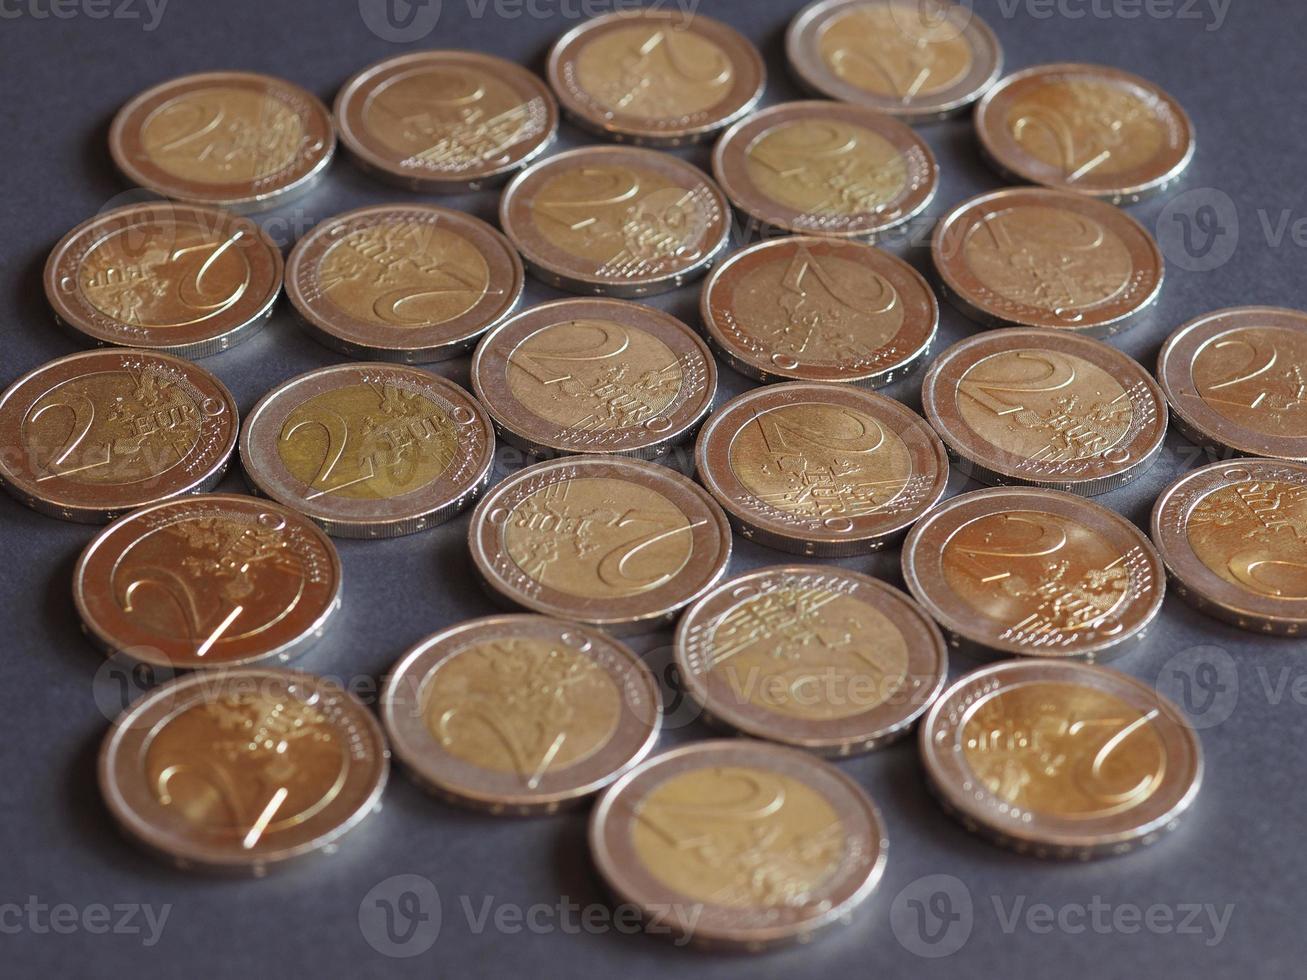 2 moedas de euro, união europeia foto